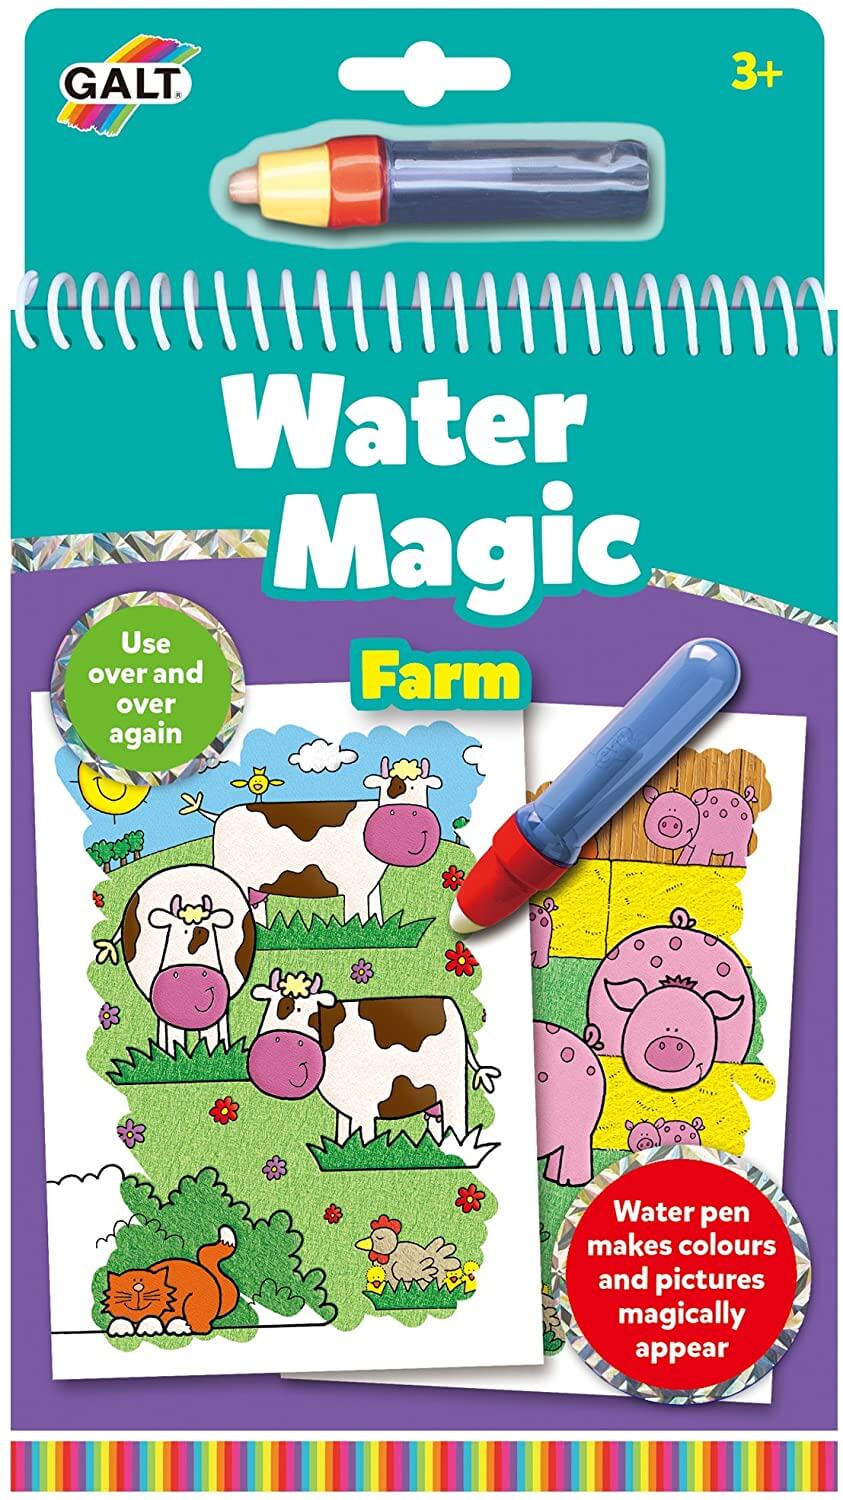 Water Magic Farm Galt toys